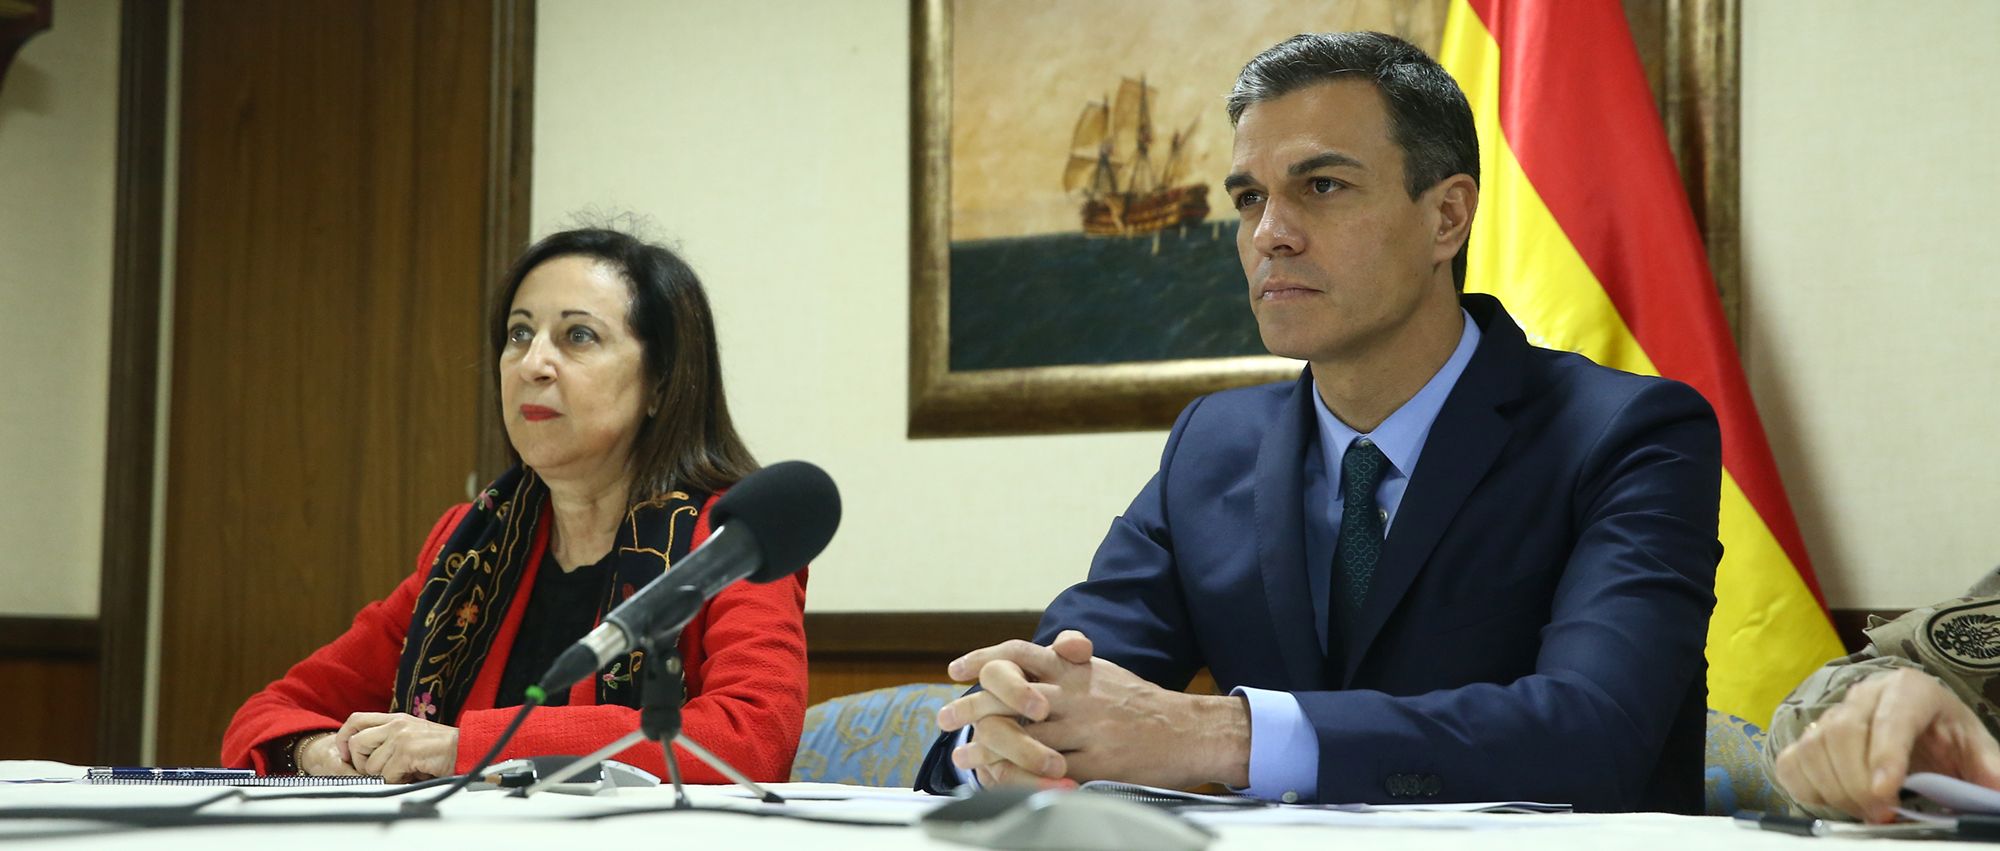 Margarita Robles y Pedro Sánchez